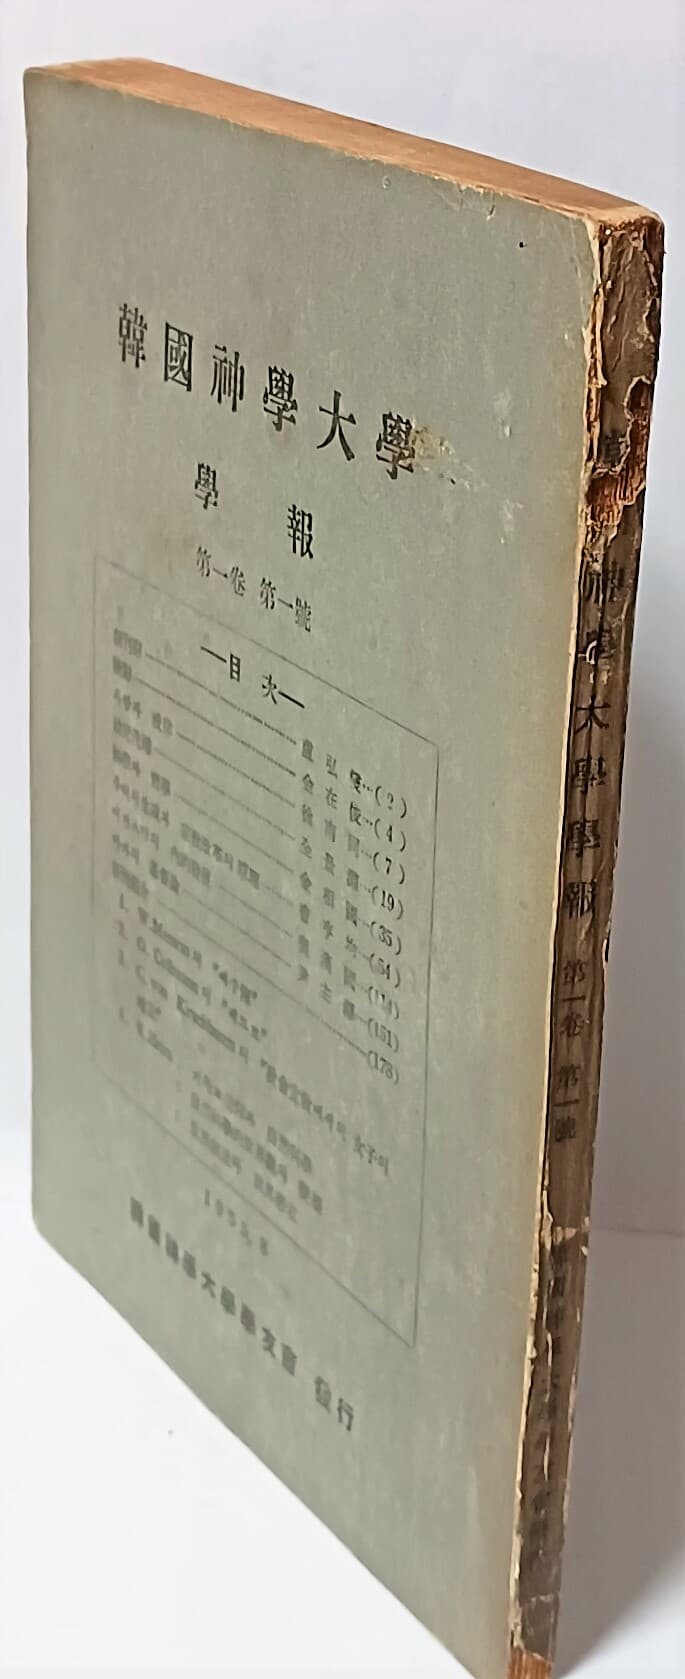 한국신학대학 학보 -제1권-제1호-1955년초판,창간호,희귀본-148/207/8, 188쪽-절판된 귀한책-